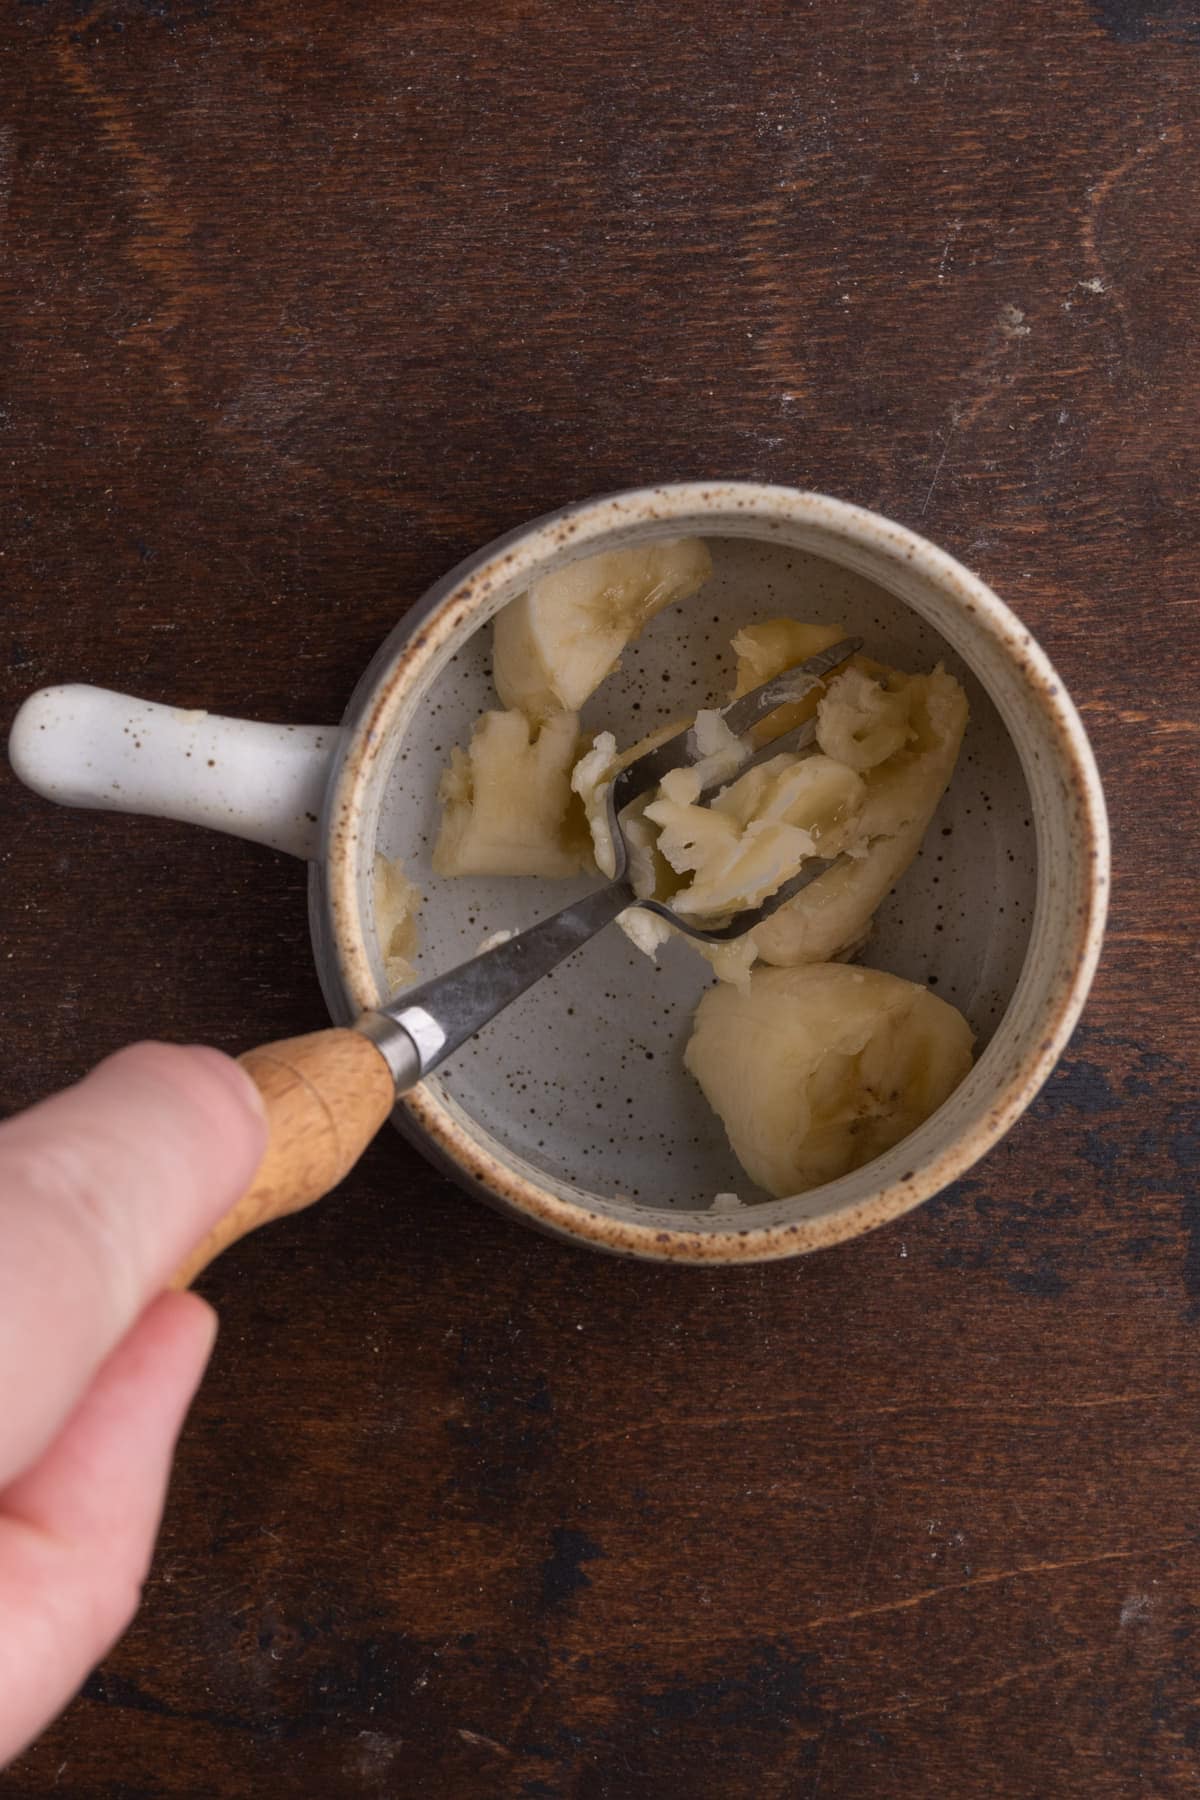 Using fork to smash a banana in a mug